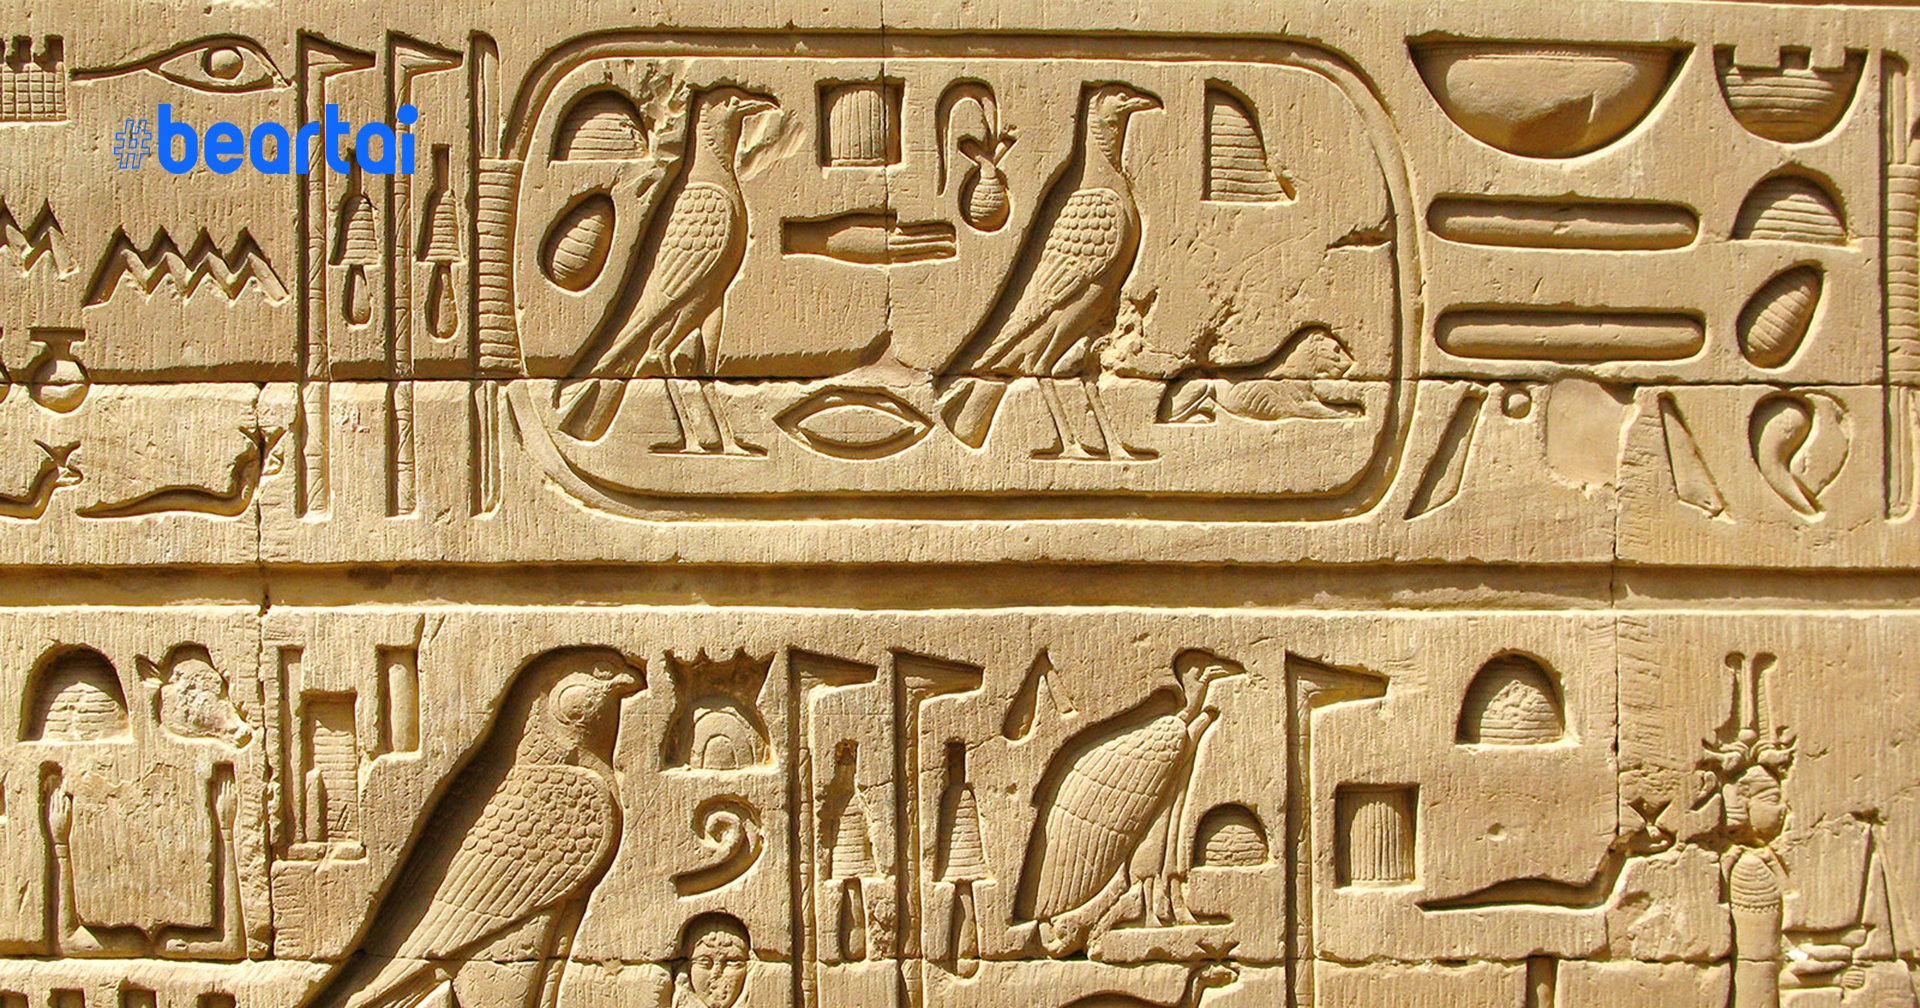 Google ใช้ AI ถอดรหัส “อักษรอียิปต์โบราณ” ได้